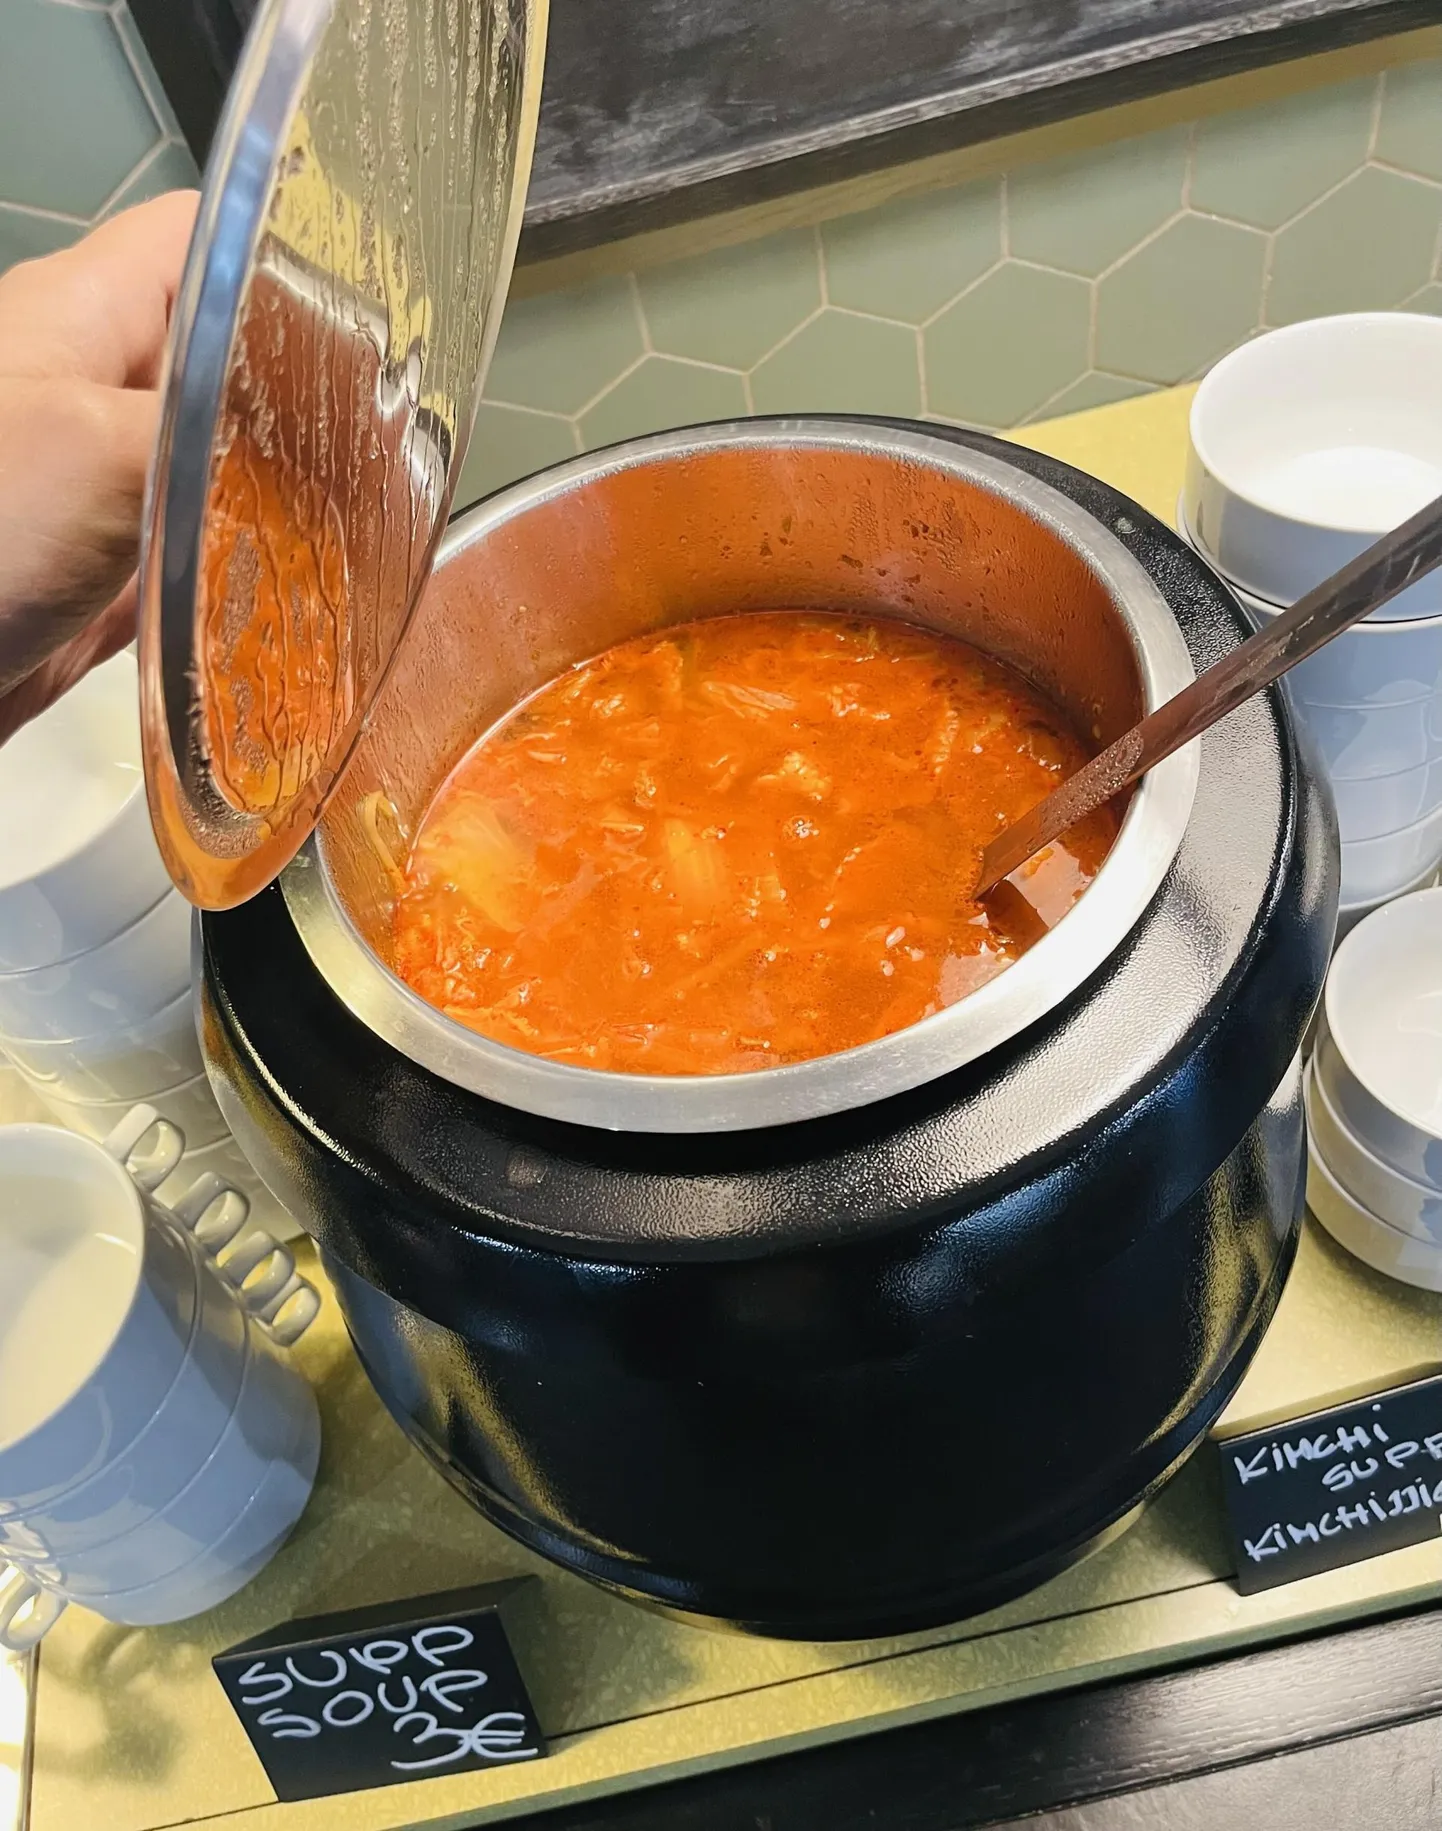 Kõrvetav kimchi-supp paneb keele põlema ja viib siis keele alla.